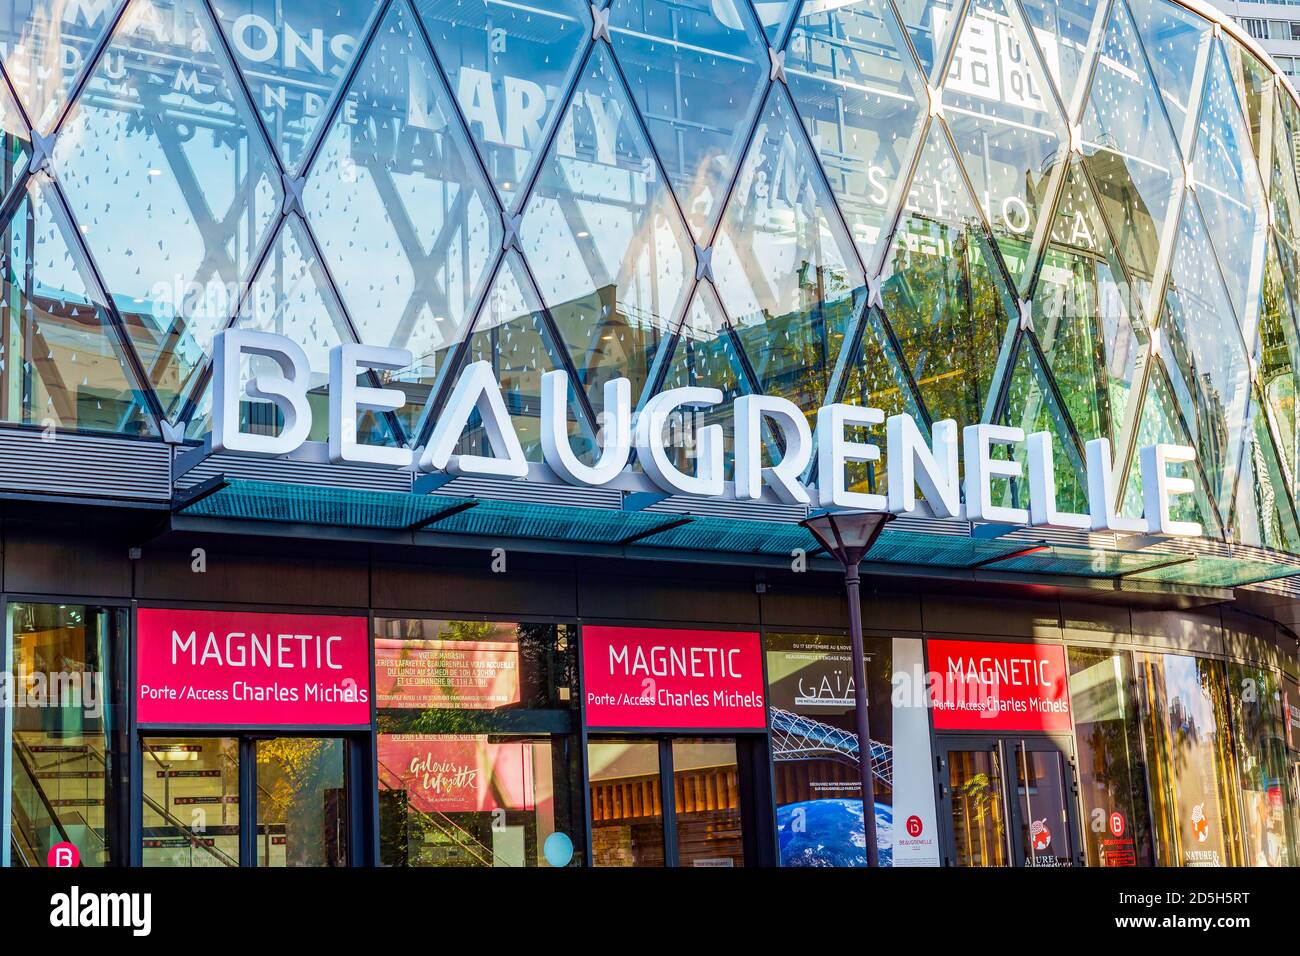 Centre commercial Beaugrenelle à Paris, France Banque D'Images